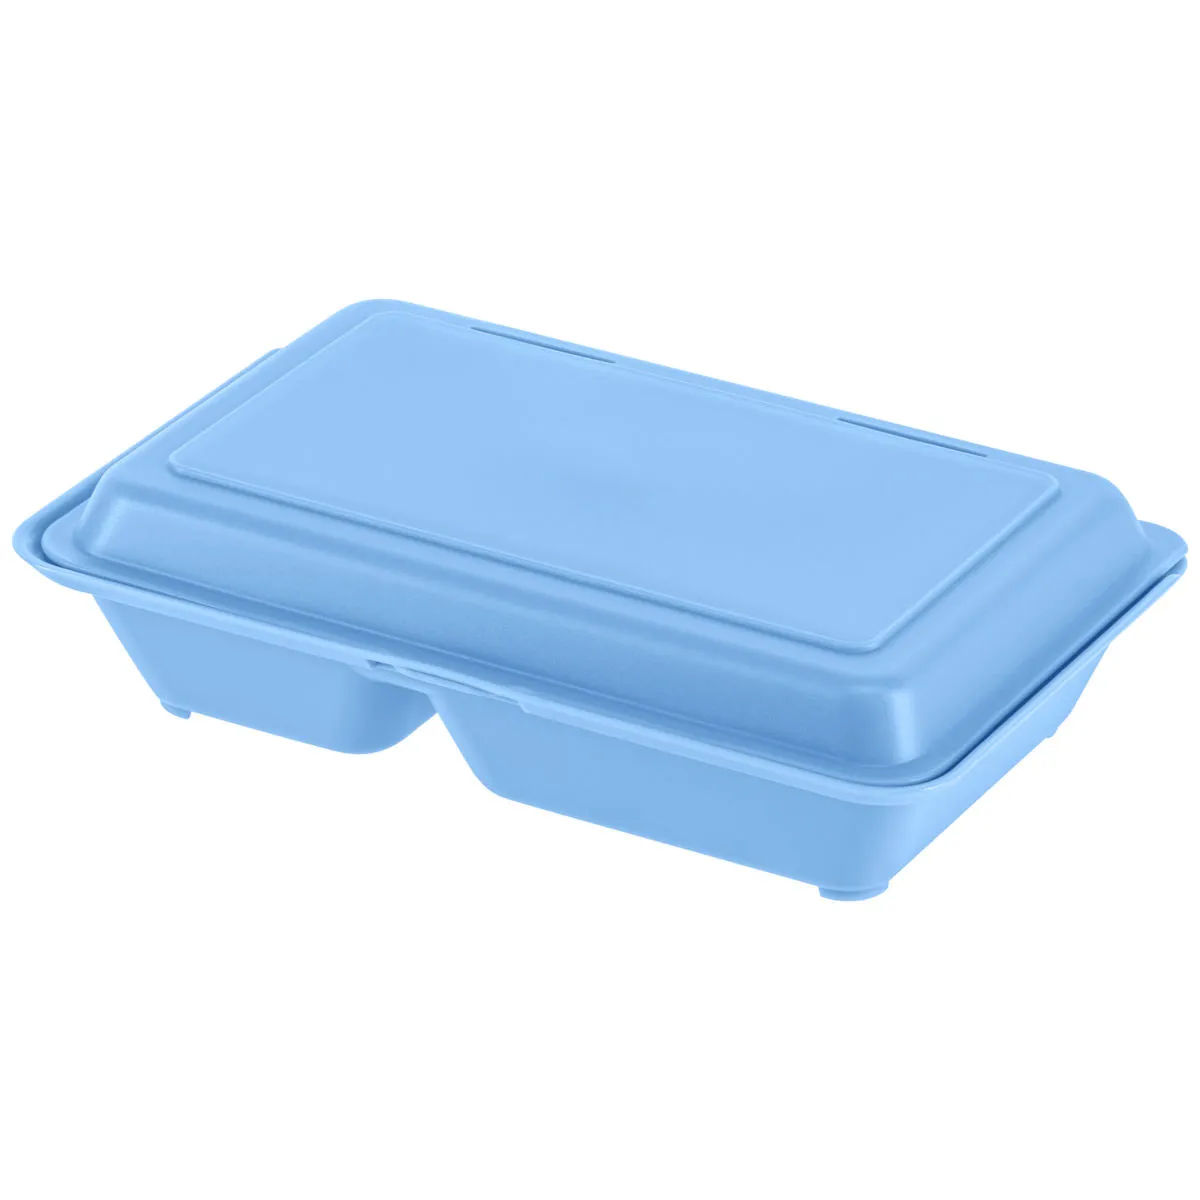 Lunch Box Yari media con 2 scomparti ; 800ml, 15.7x24.6x6.1 cm (LxLxH); blu; rettangolare; 25 pz. / confezione